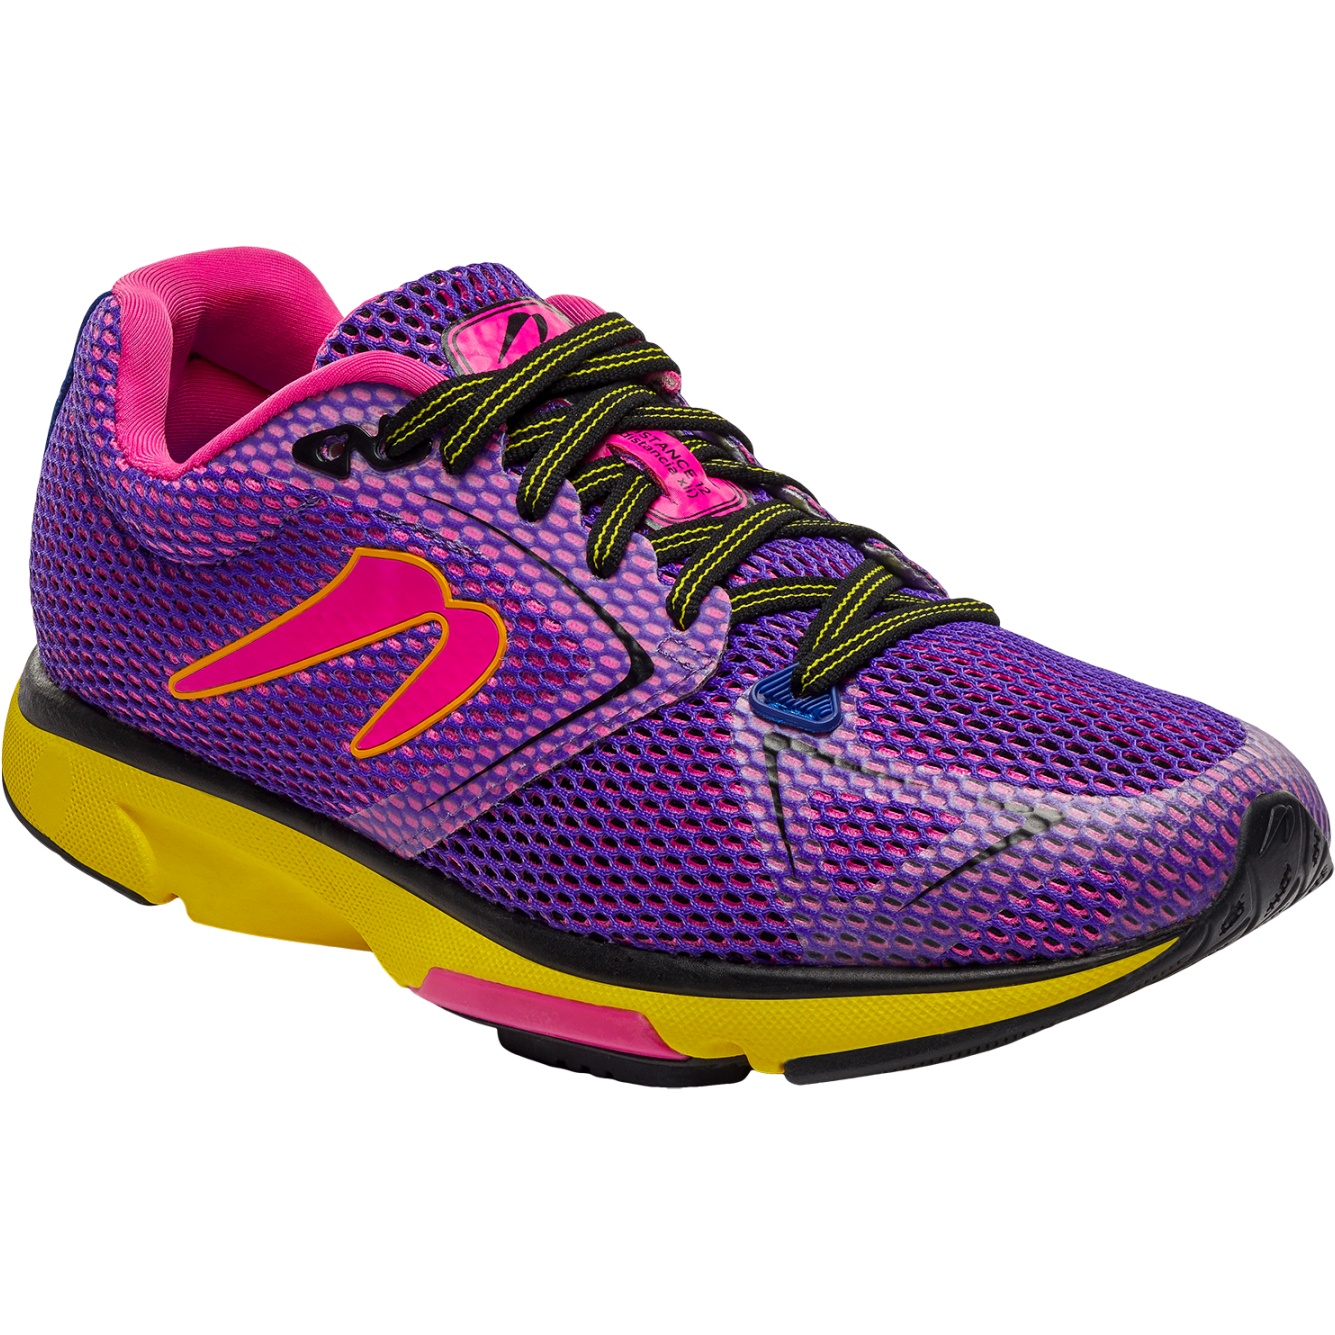 Productfoto van Newton Running Distance 12 Dames Hardloopschoenen - violet/yellow